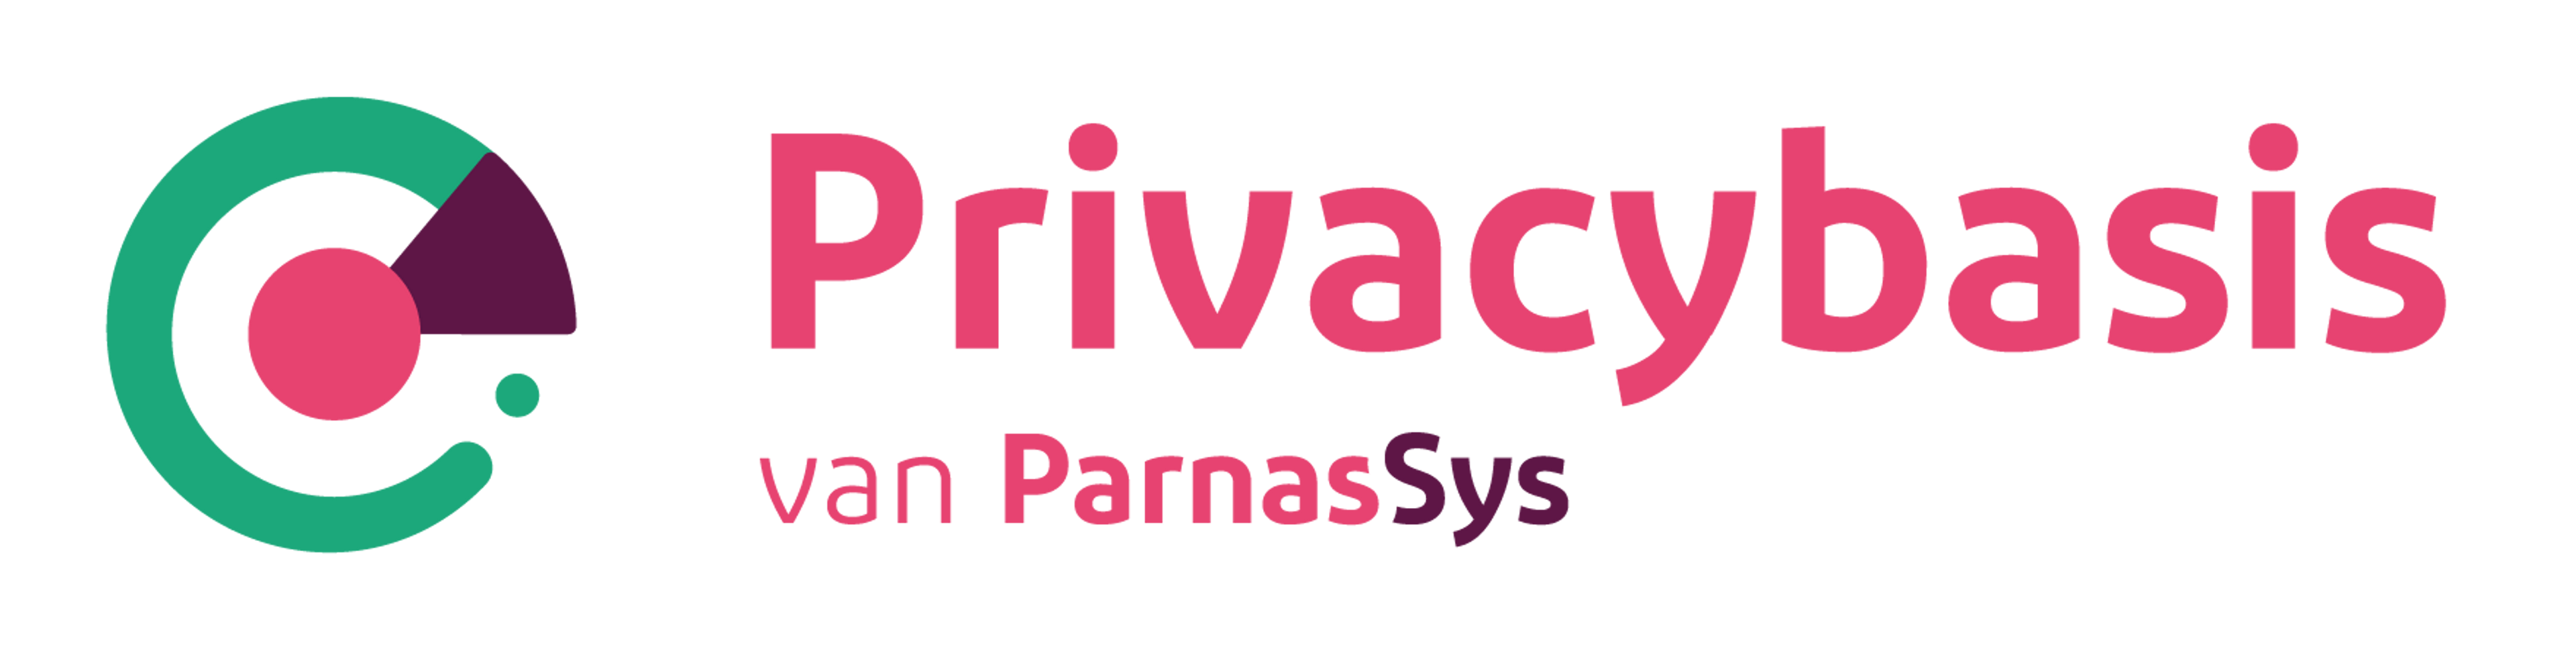 Privacybasis van ParnasSys - logo